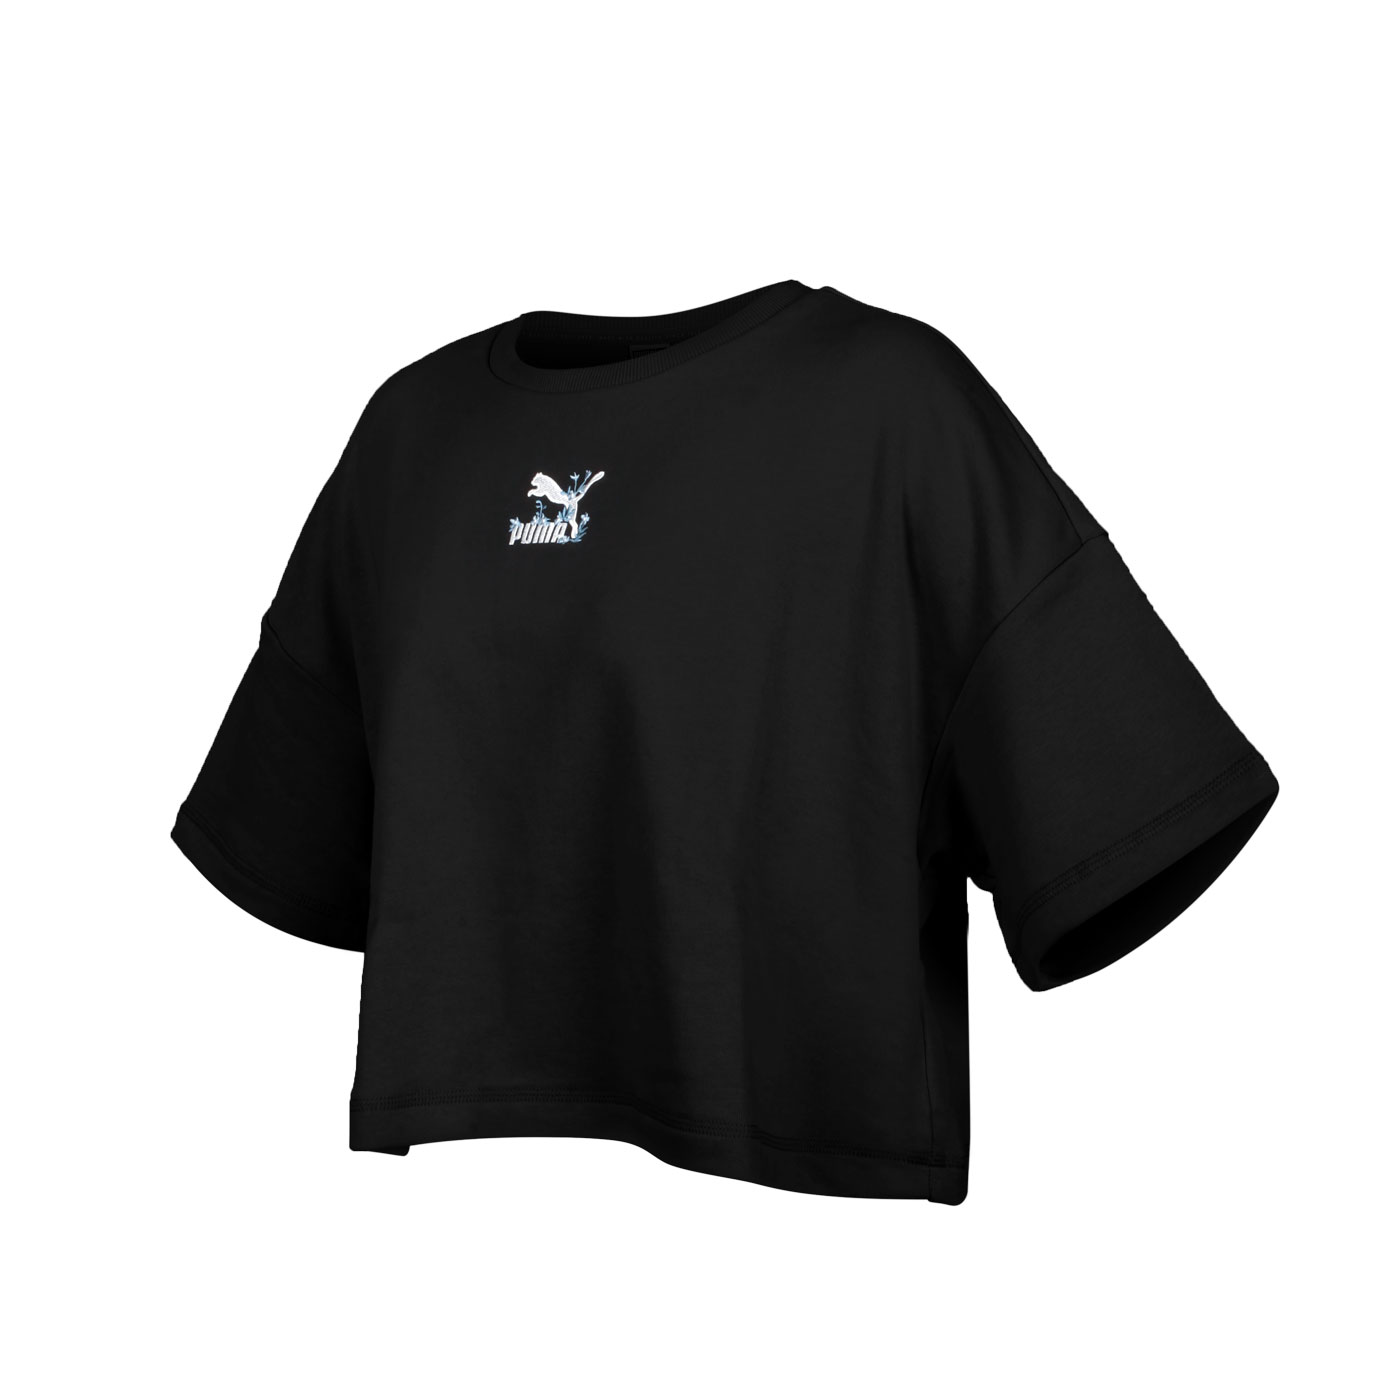 PUMA 女款流行系列Floral短袖T恤 53313101 - 黑白藍